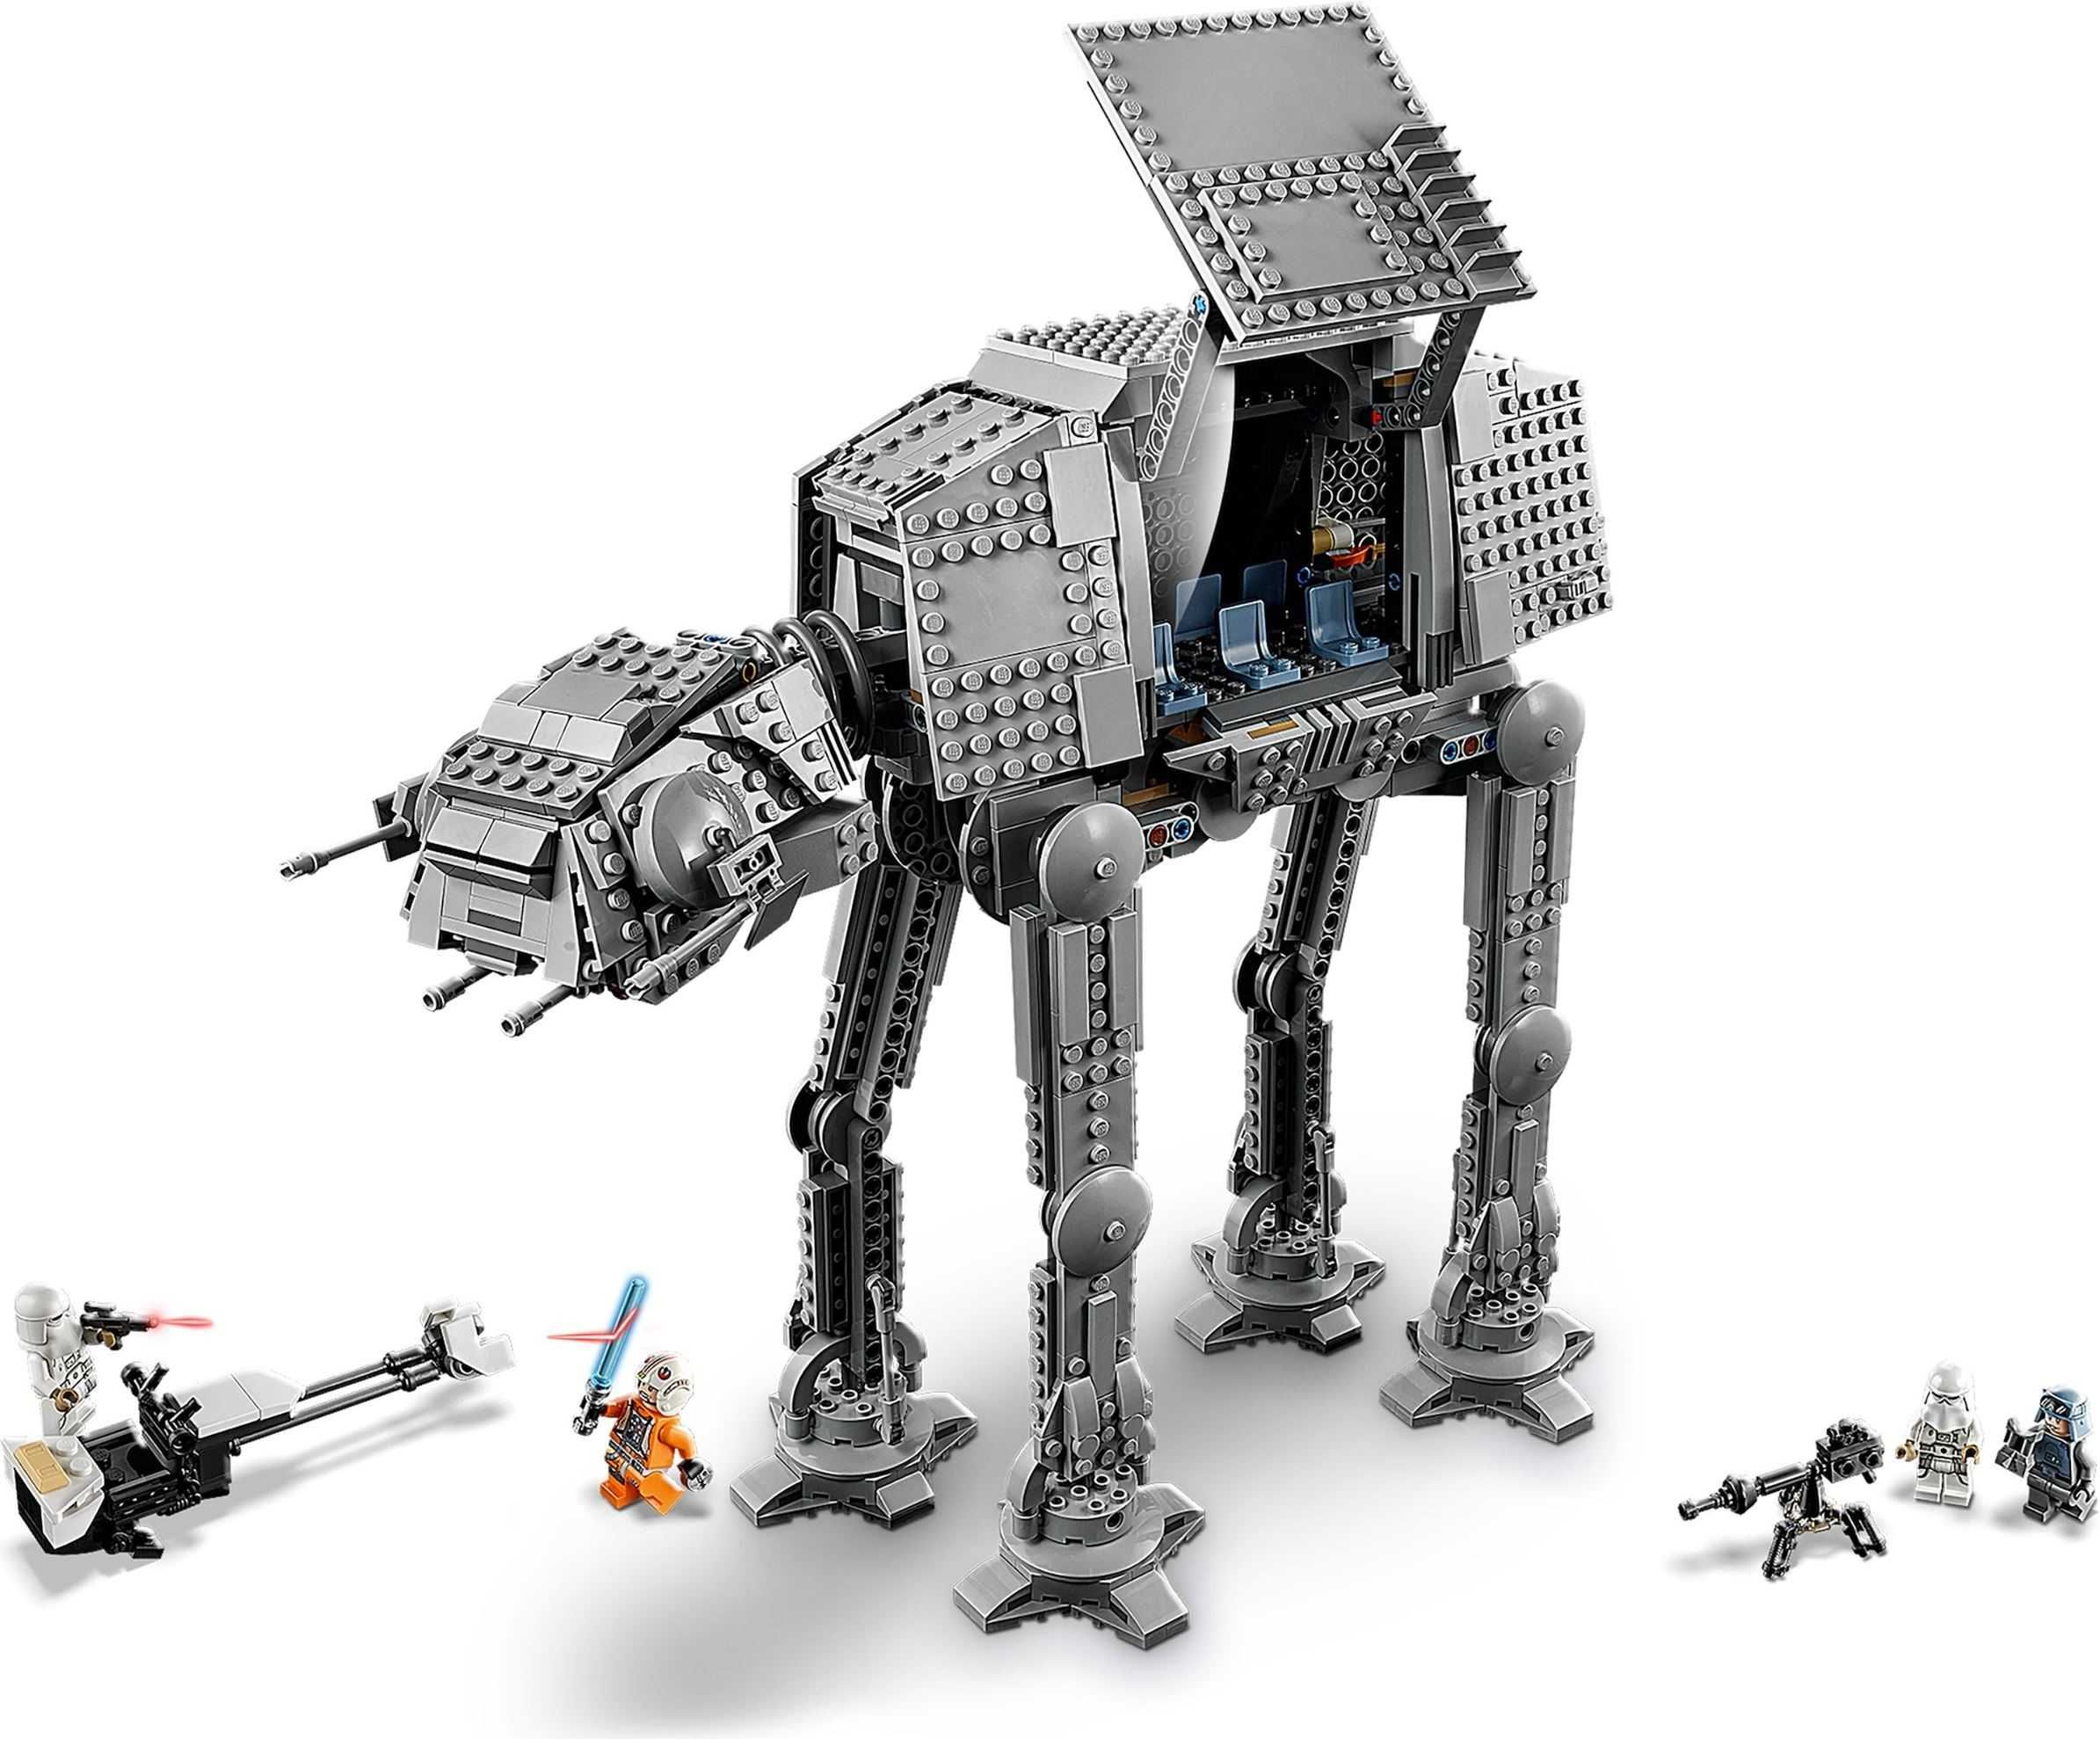 LEGO Star Wars 75288 : AT-AT - NOU sigilat